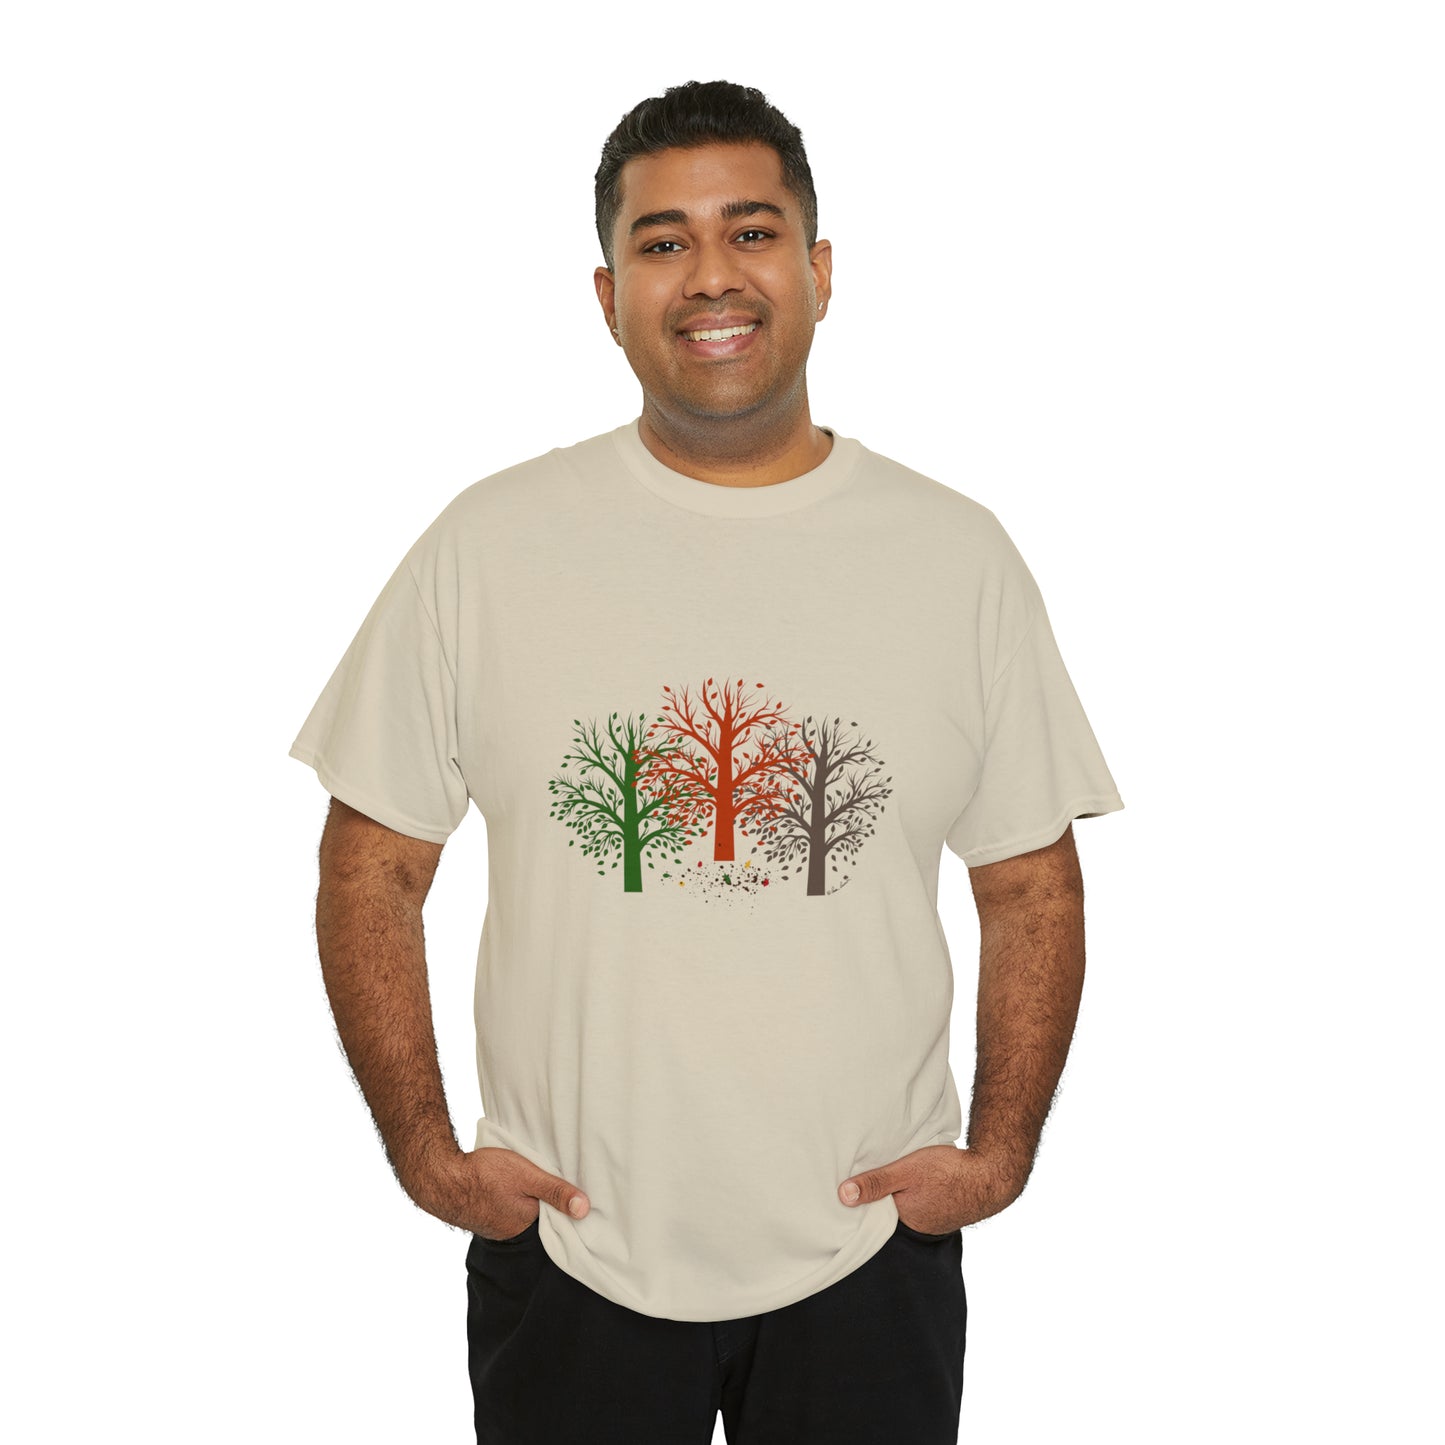 Unisex Autumn-Trees T-shirt: Cotton; 3 colors; Gildan brand